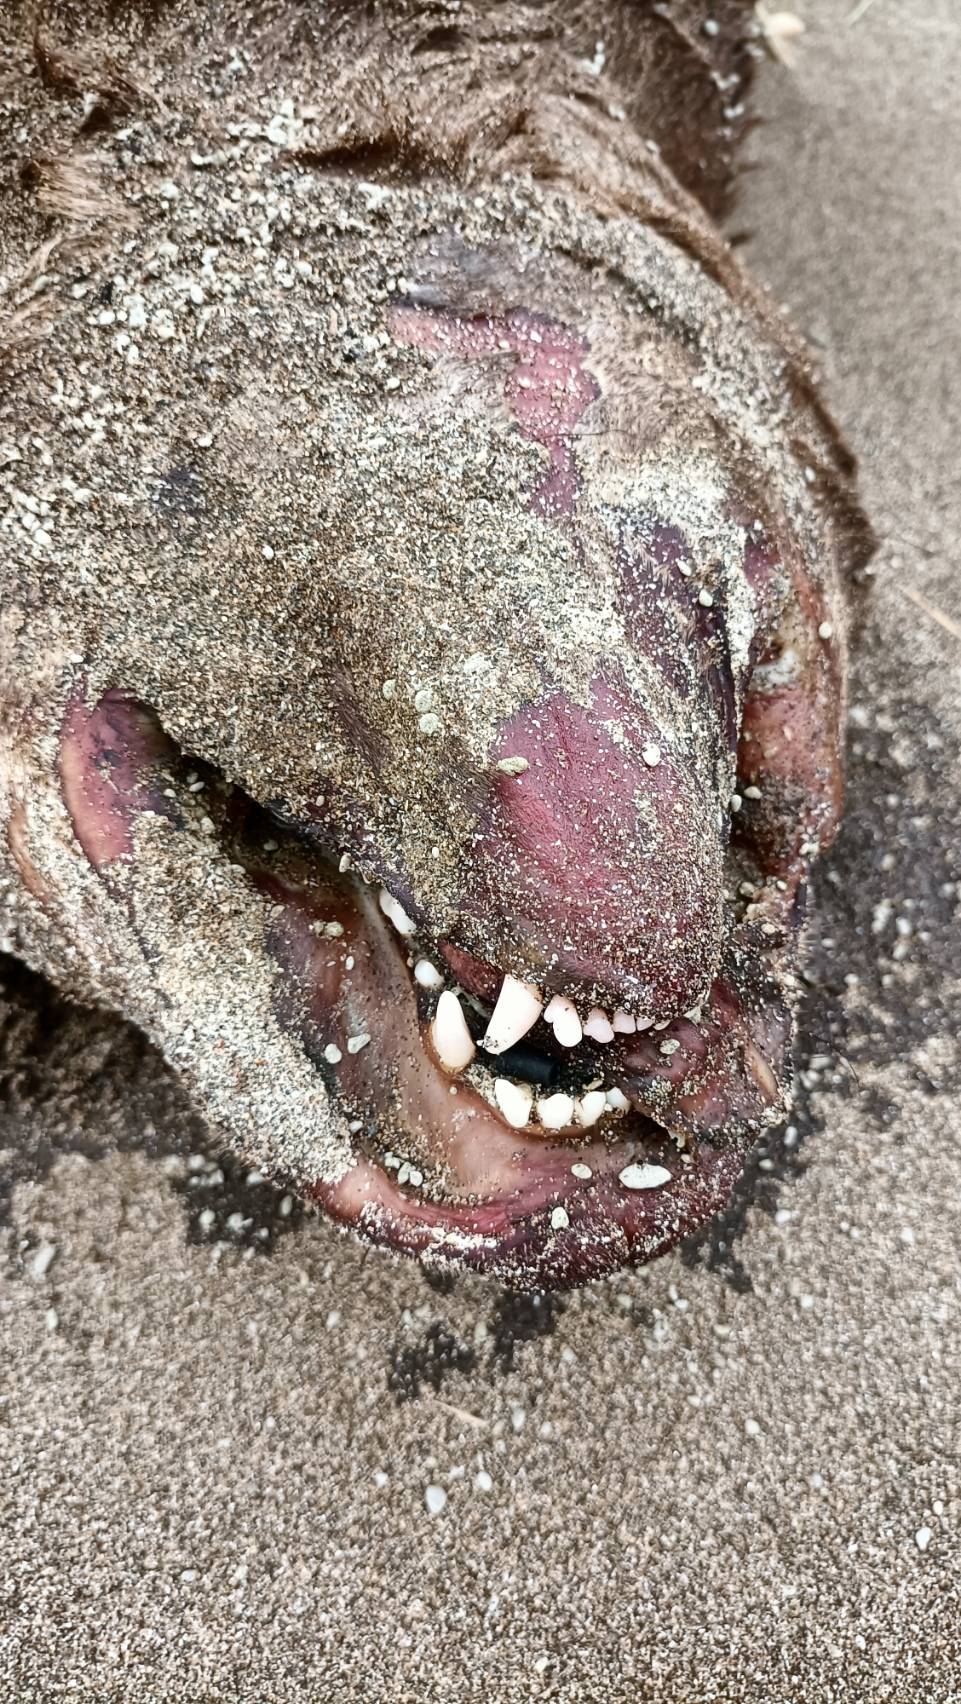 動物屍體有明顯的犬齒應為犬隻屍體。